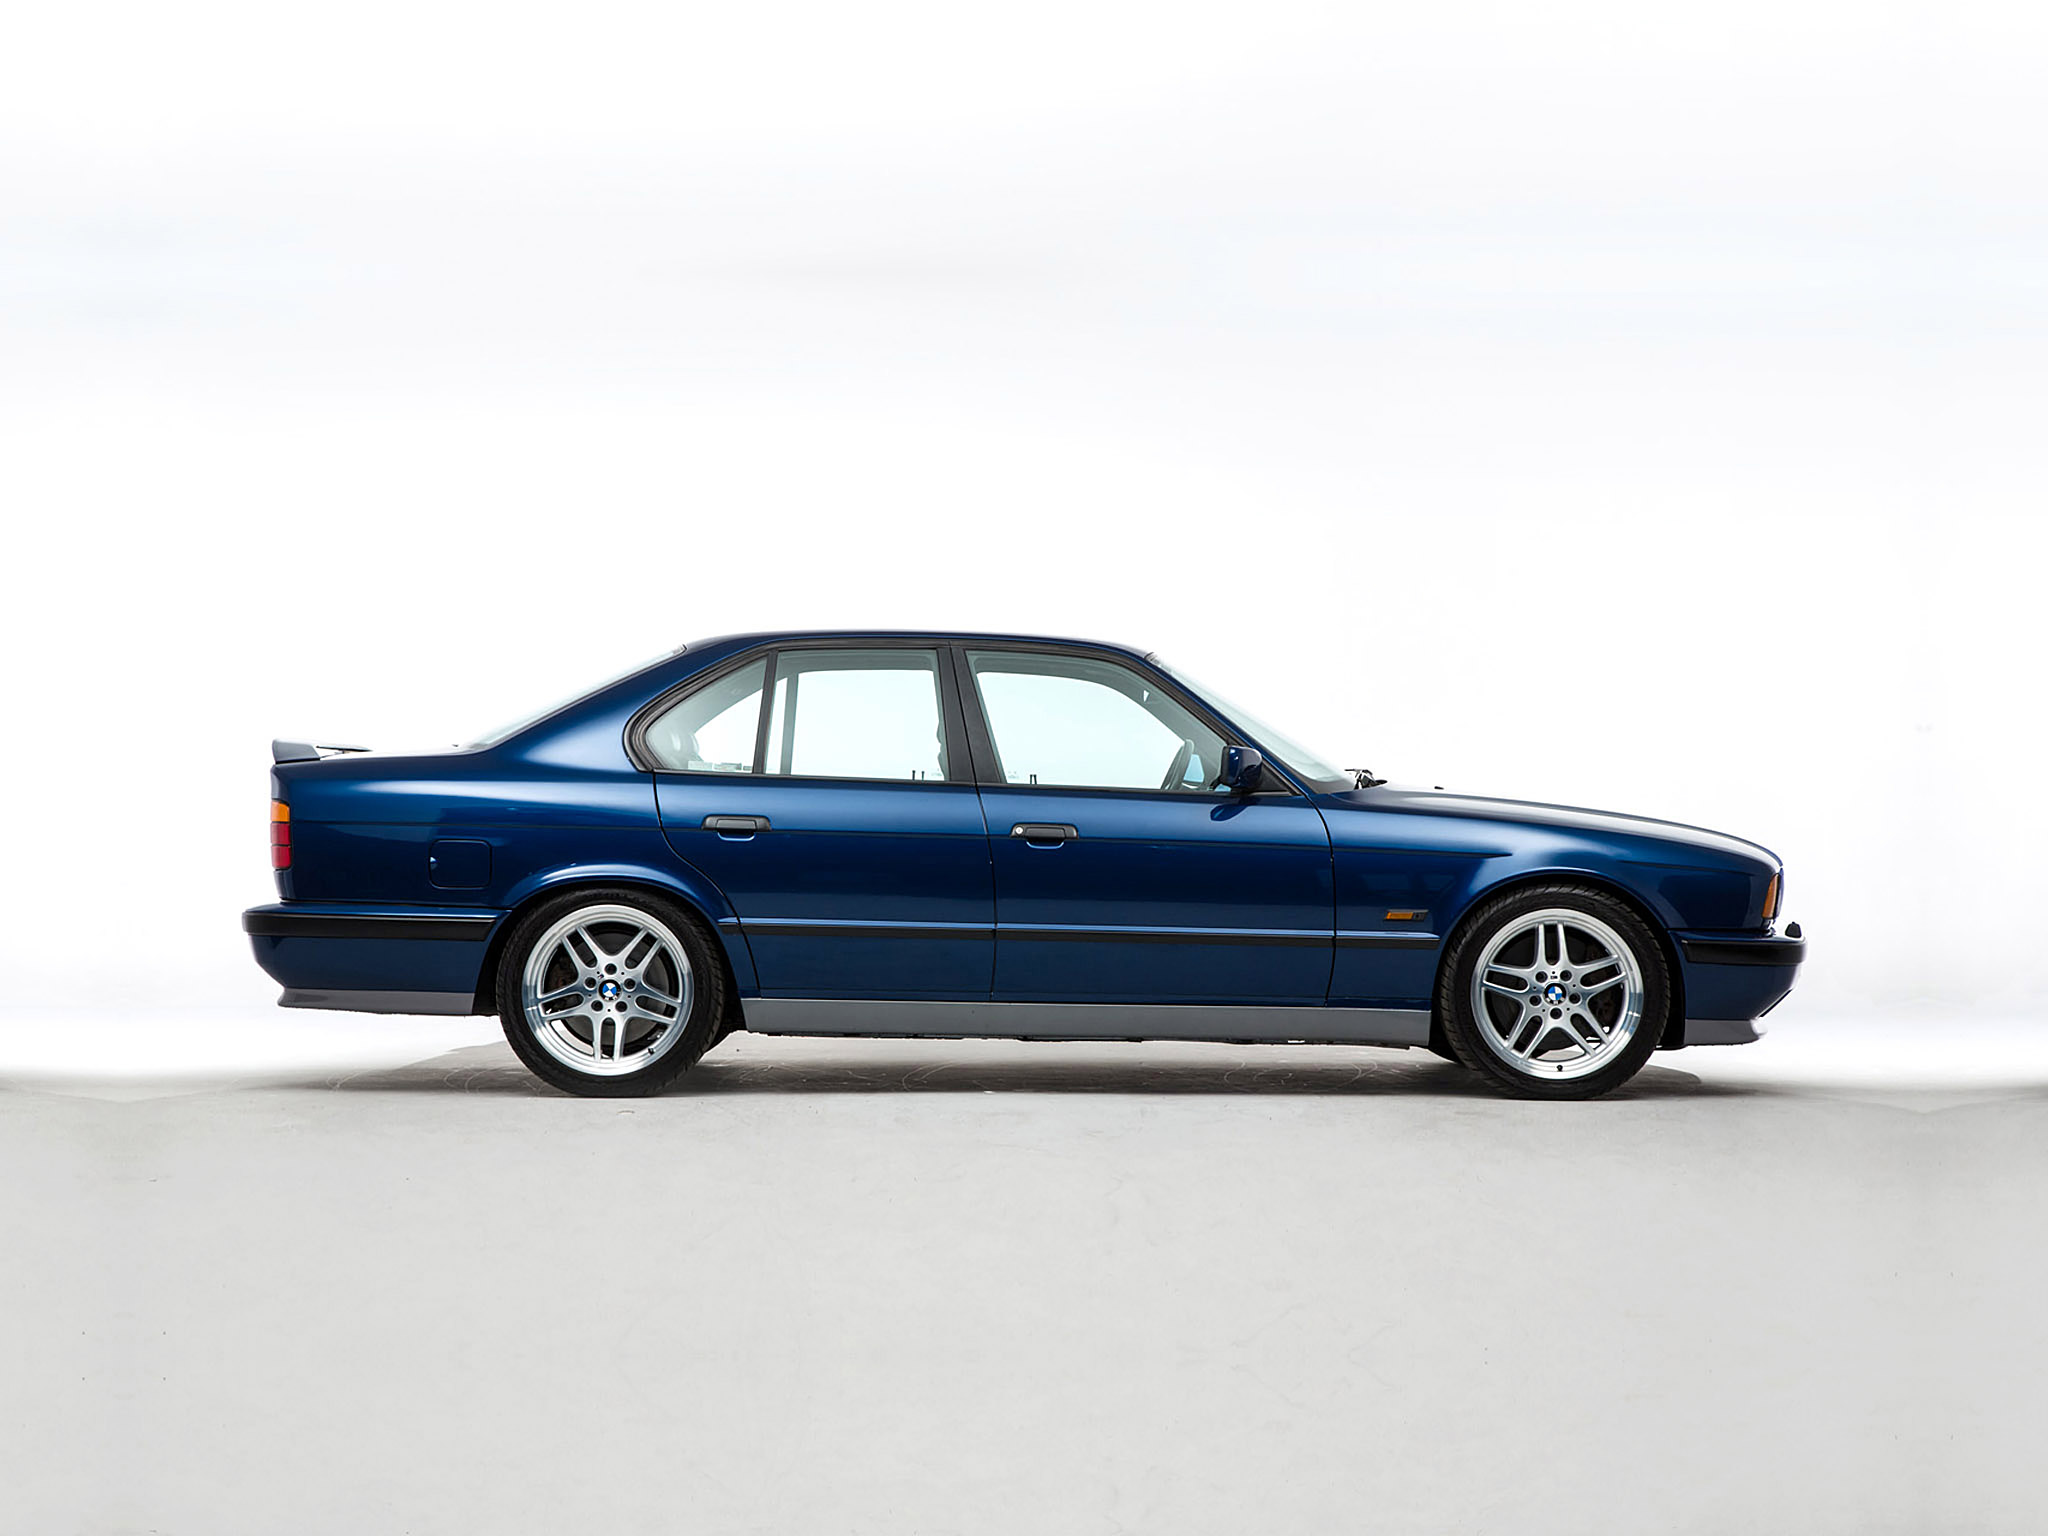  1995 BMW M5 Wallpaper.